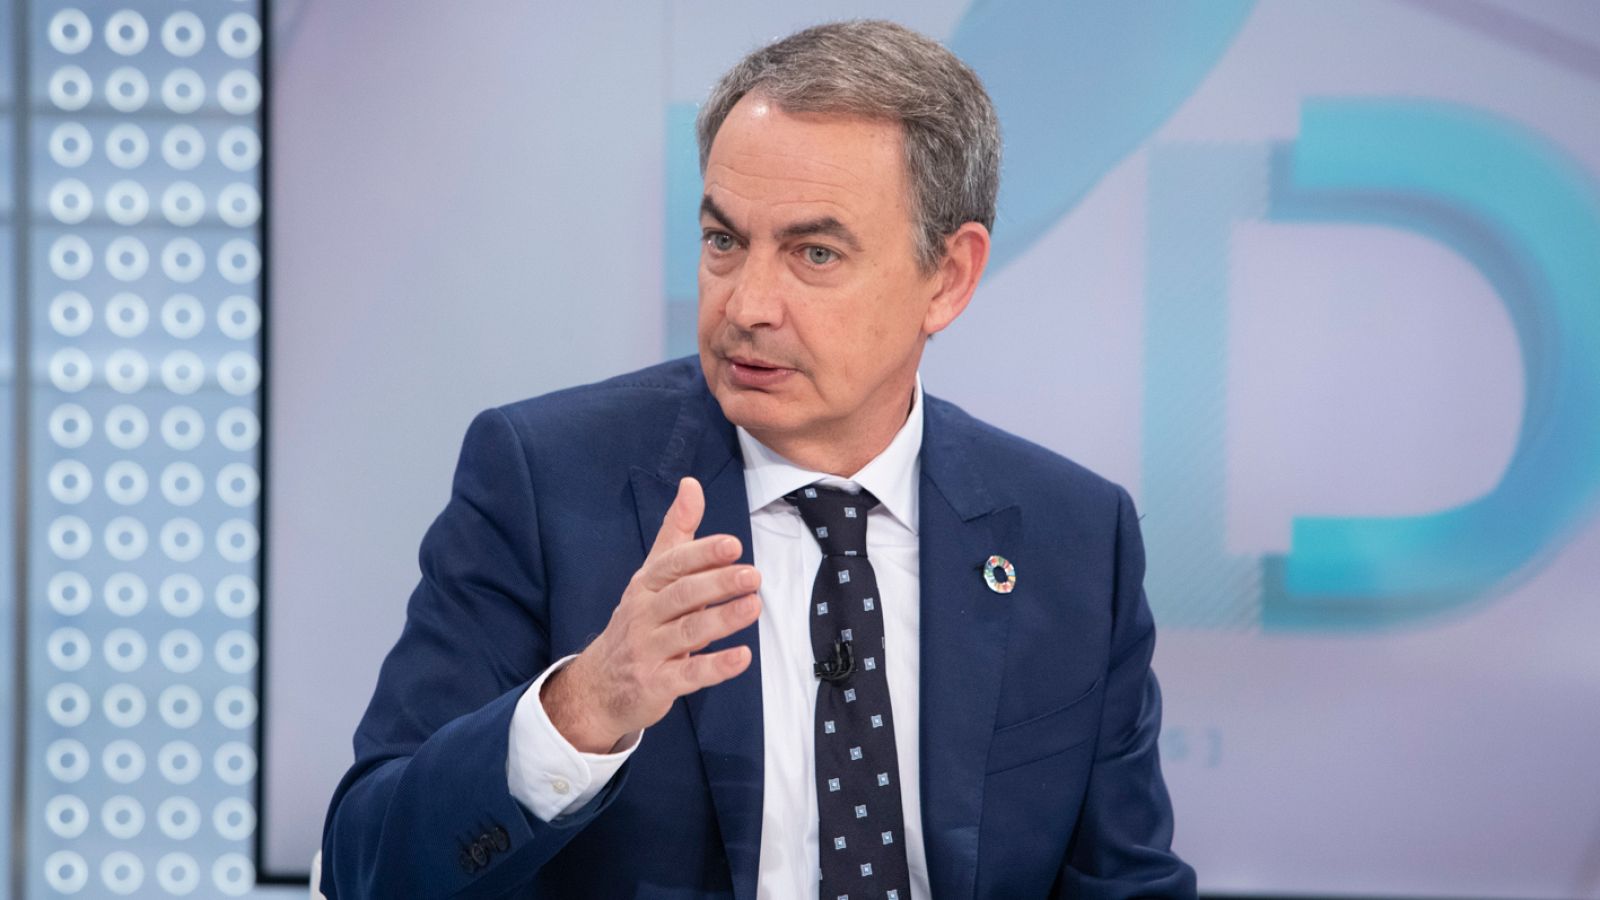 Jose Luis Rodriguez Zapatero asegura que "siempre apostó" por el acuerdo con Podemos